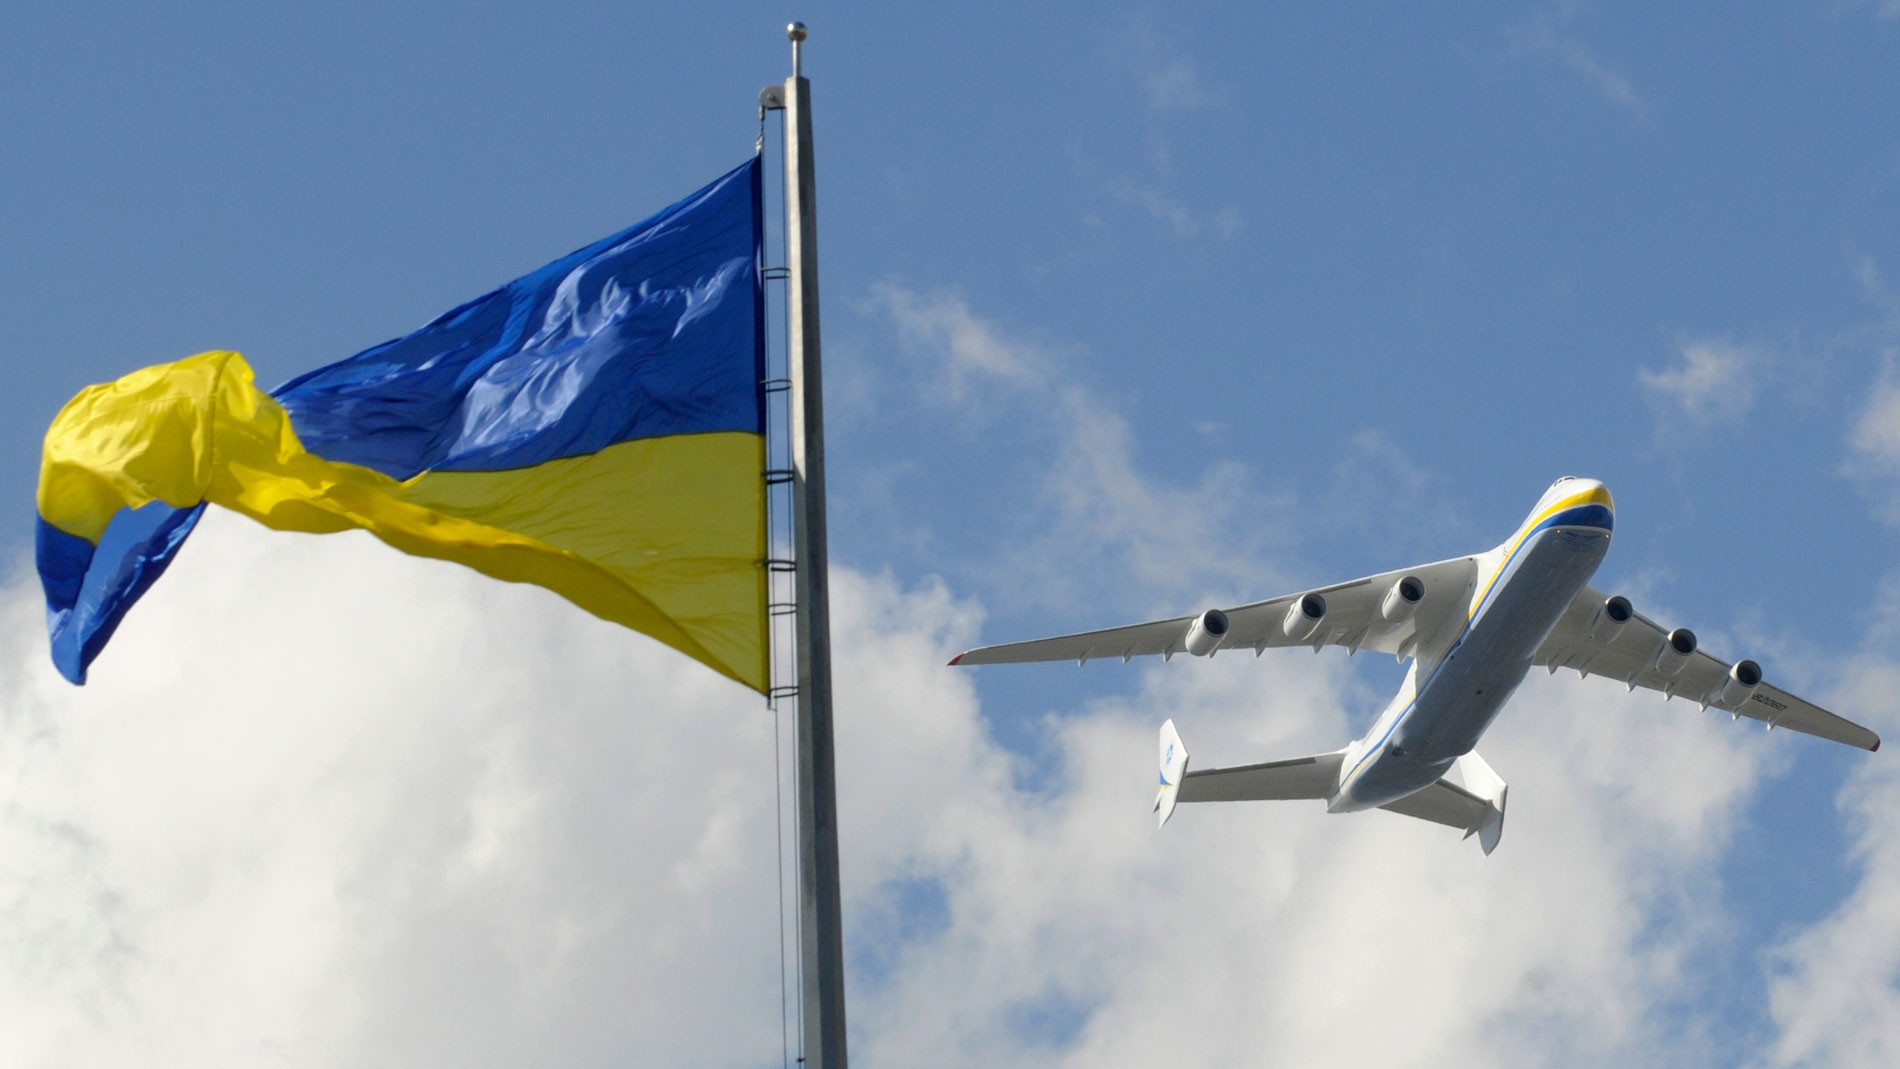 Обломки вместо крыльев. Украина может окончательно лишиться своих самолётов